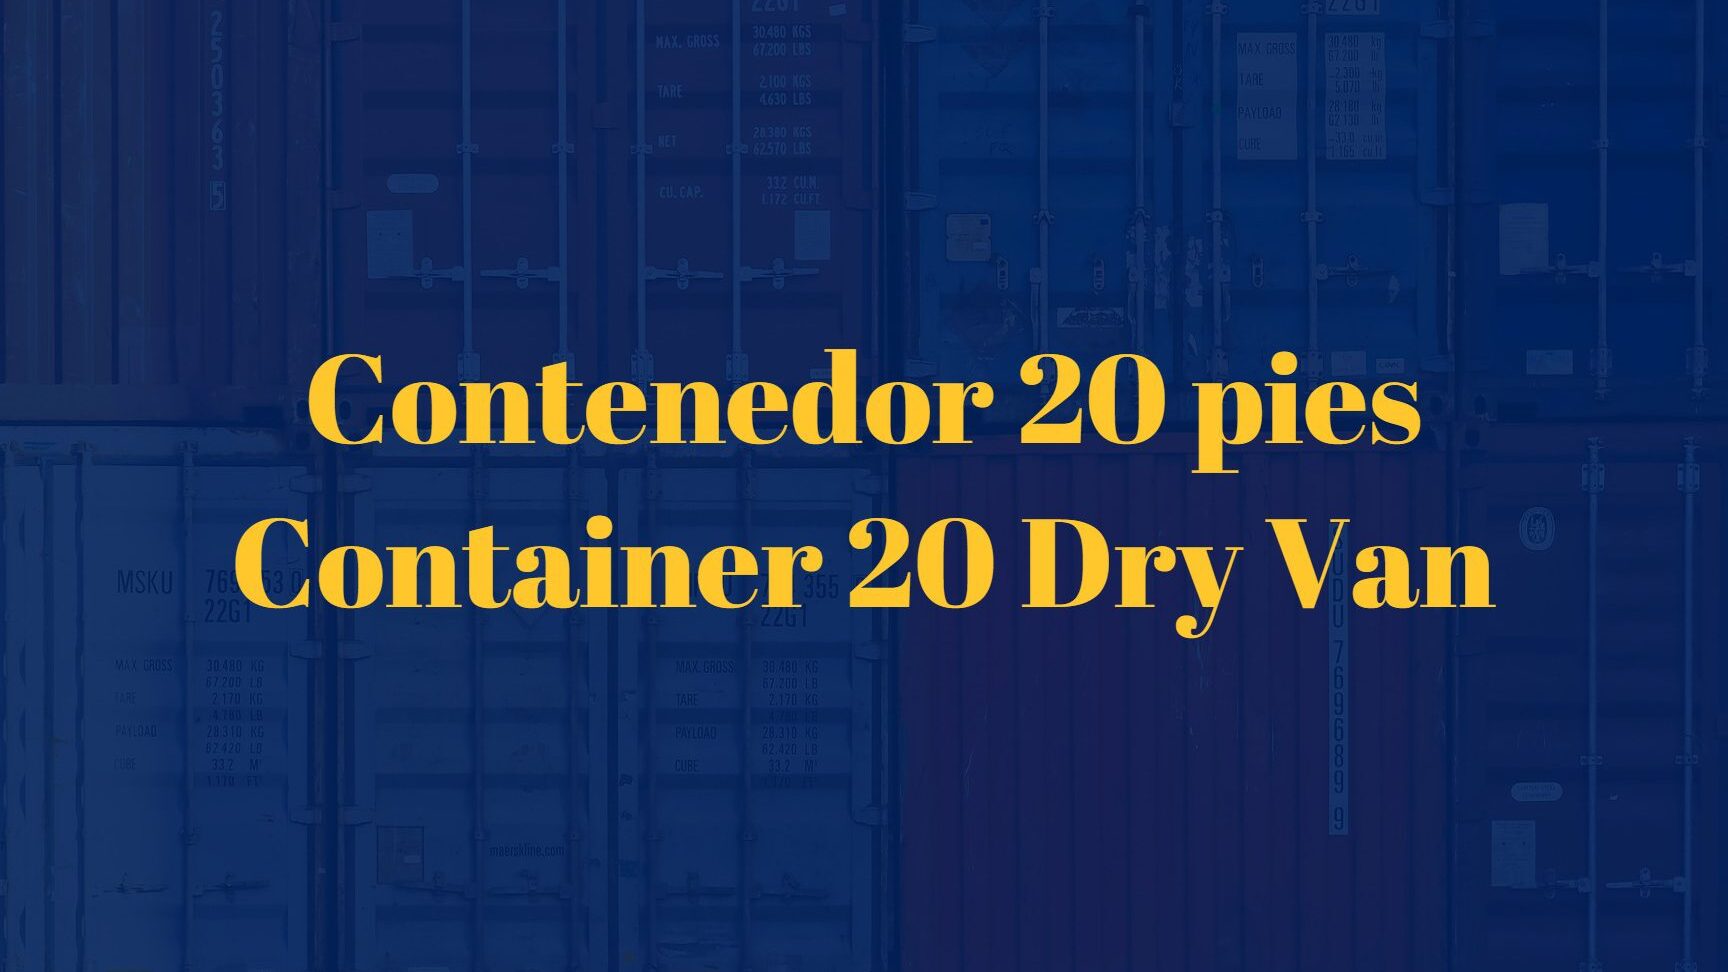 Todo lo que debes saber sobre el contenedor 20 DV